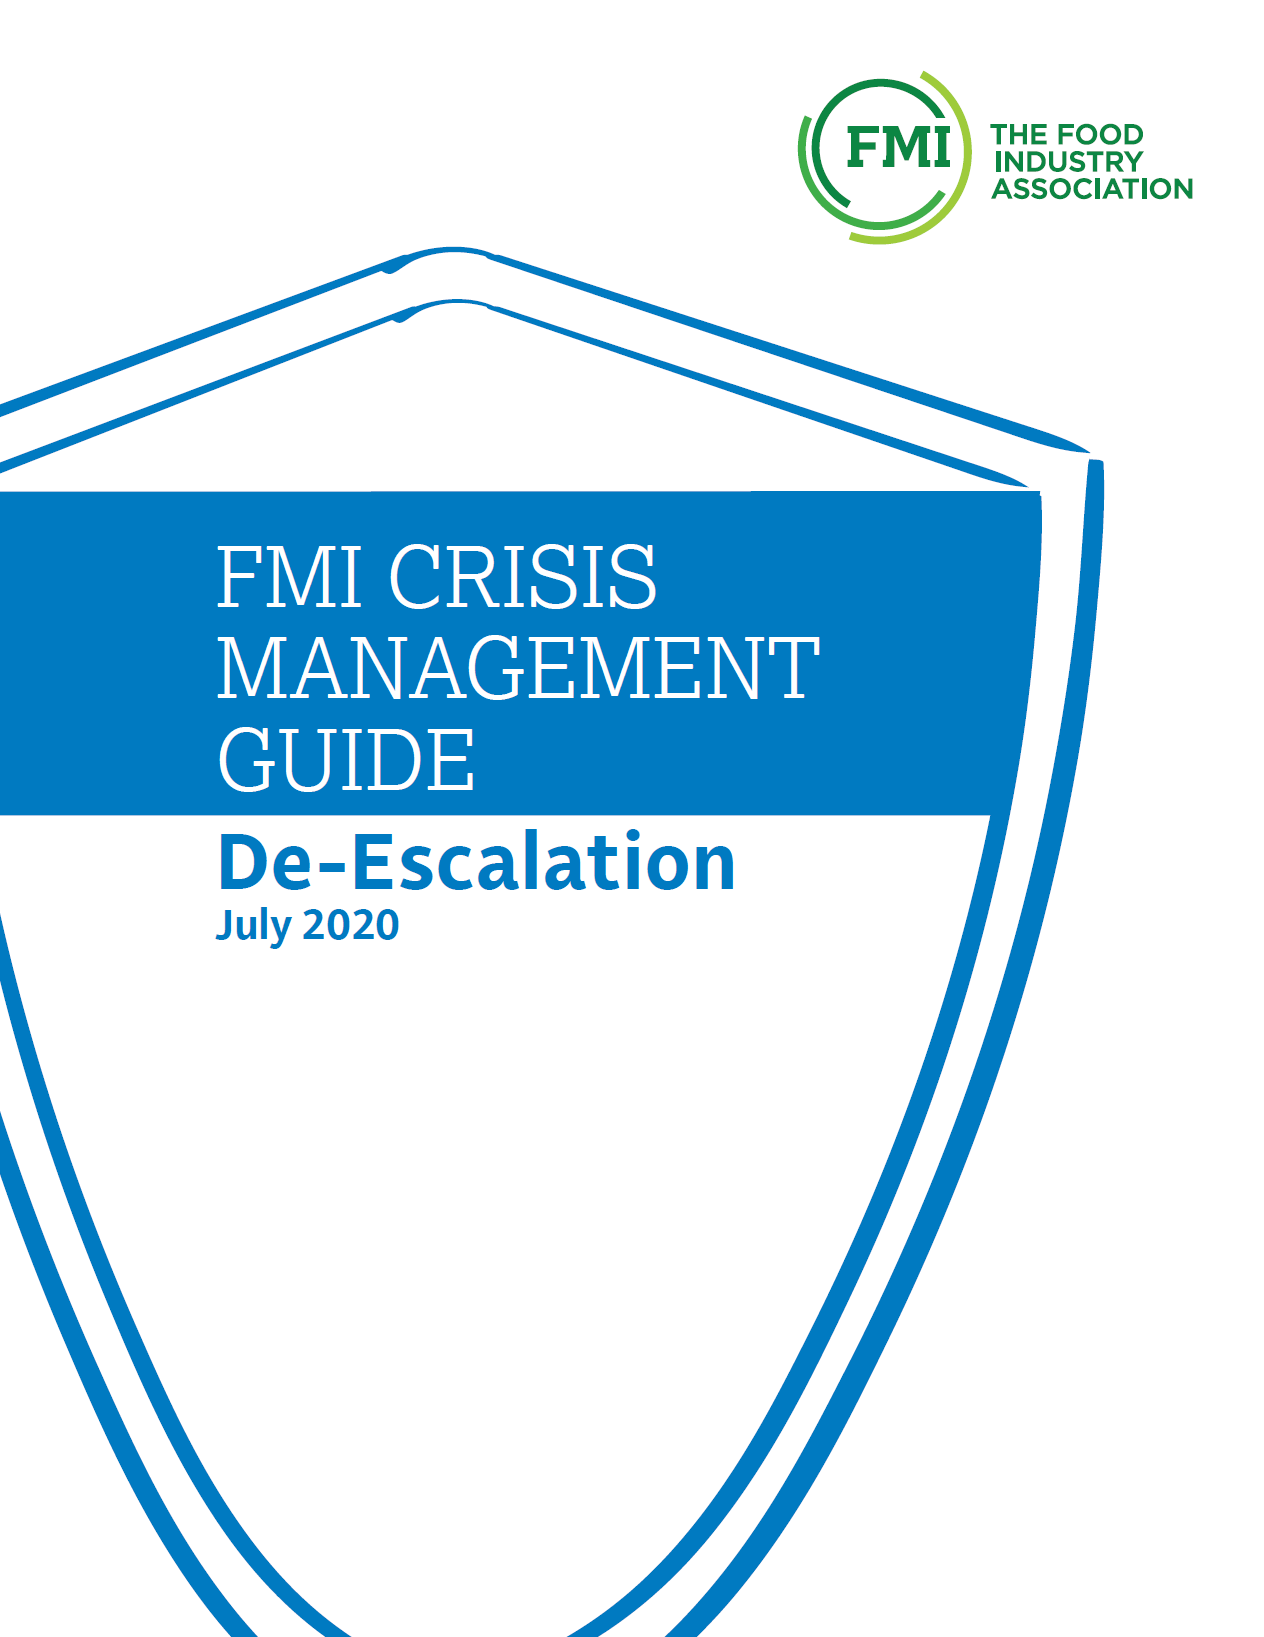 De-escalation Guide 2020